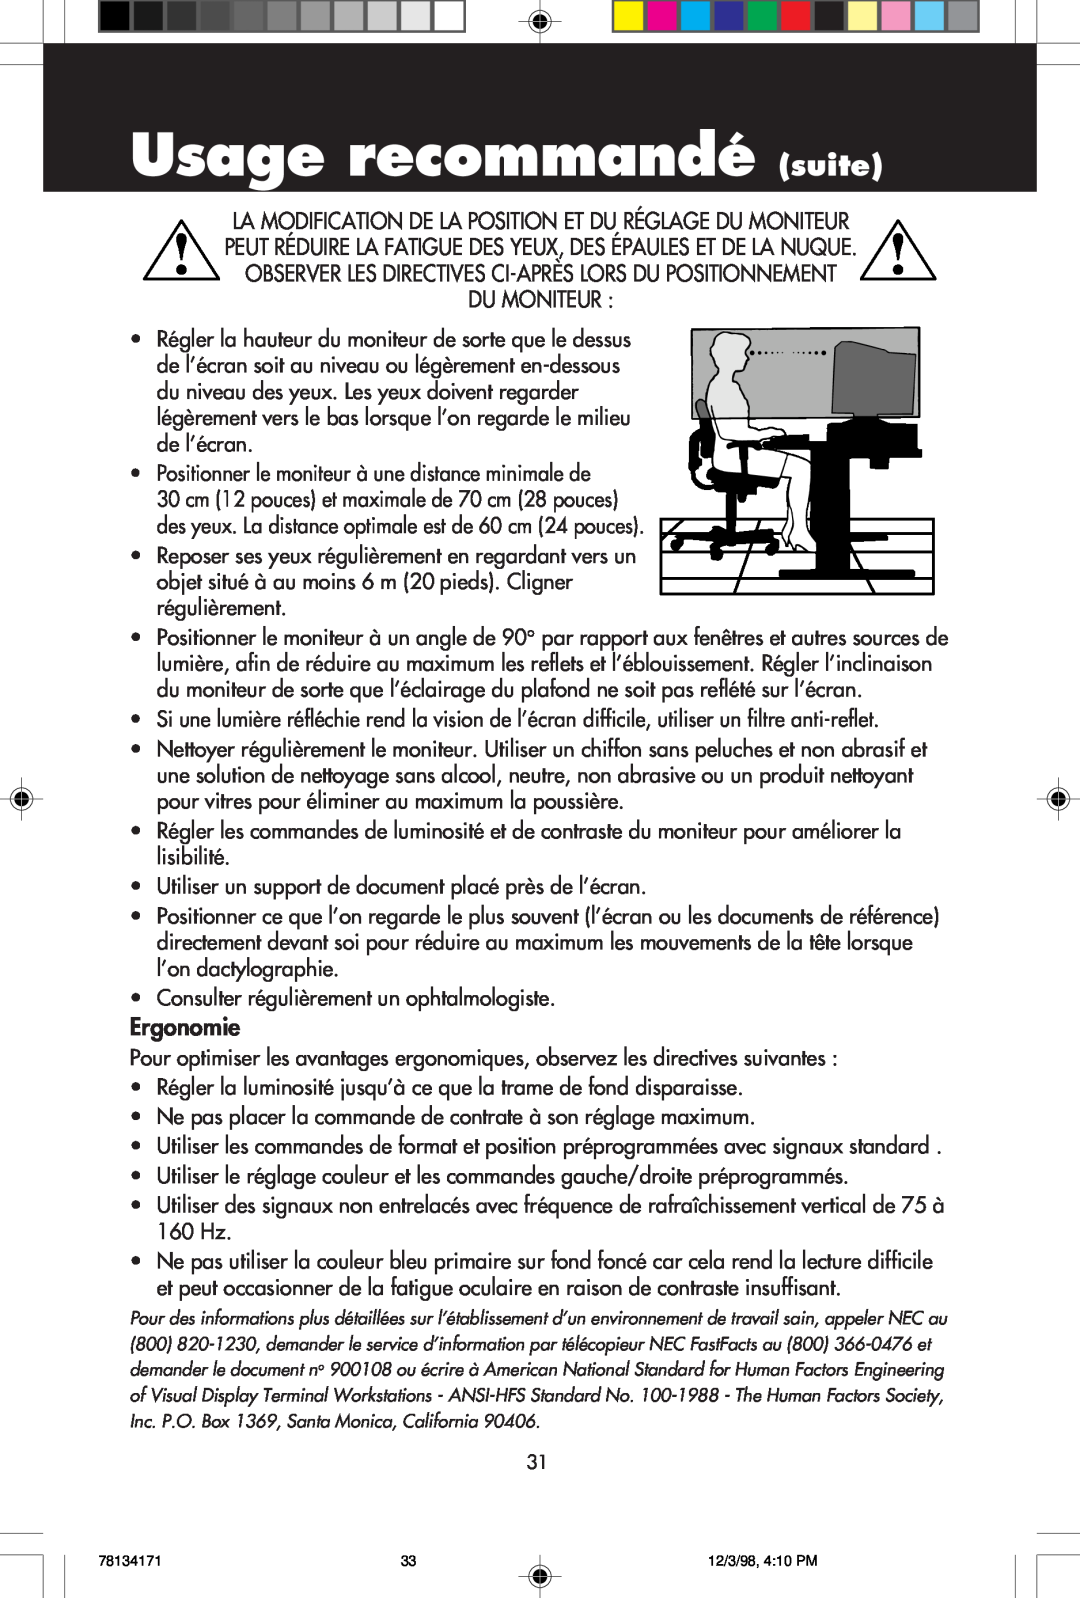 NEC JC-1946UMW Usage recommandé suite, Observer Les Directives Ci-Après Lors Du Positionnement Du Moniteur, Ergonomie 